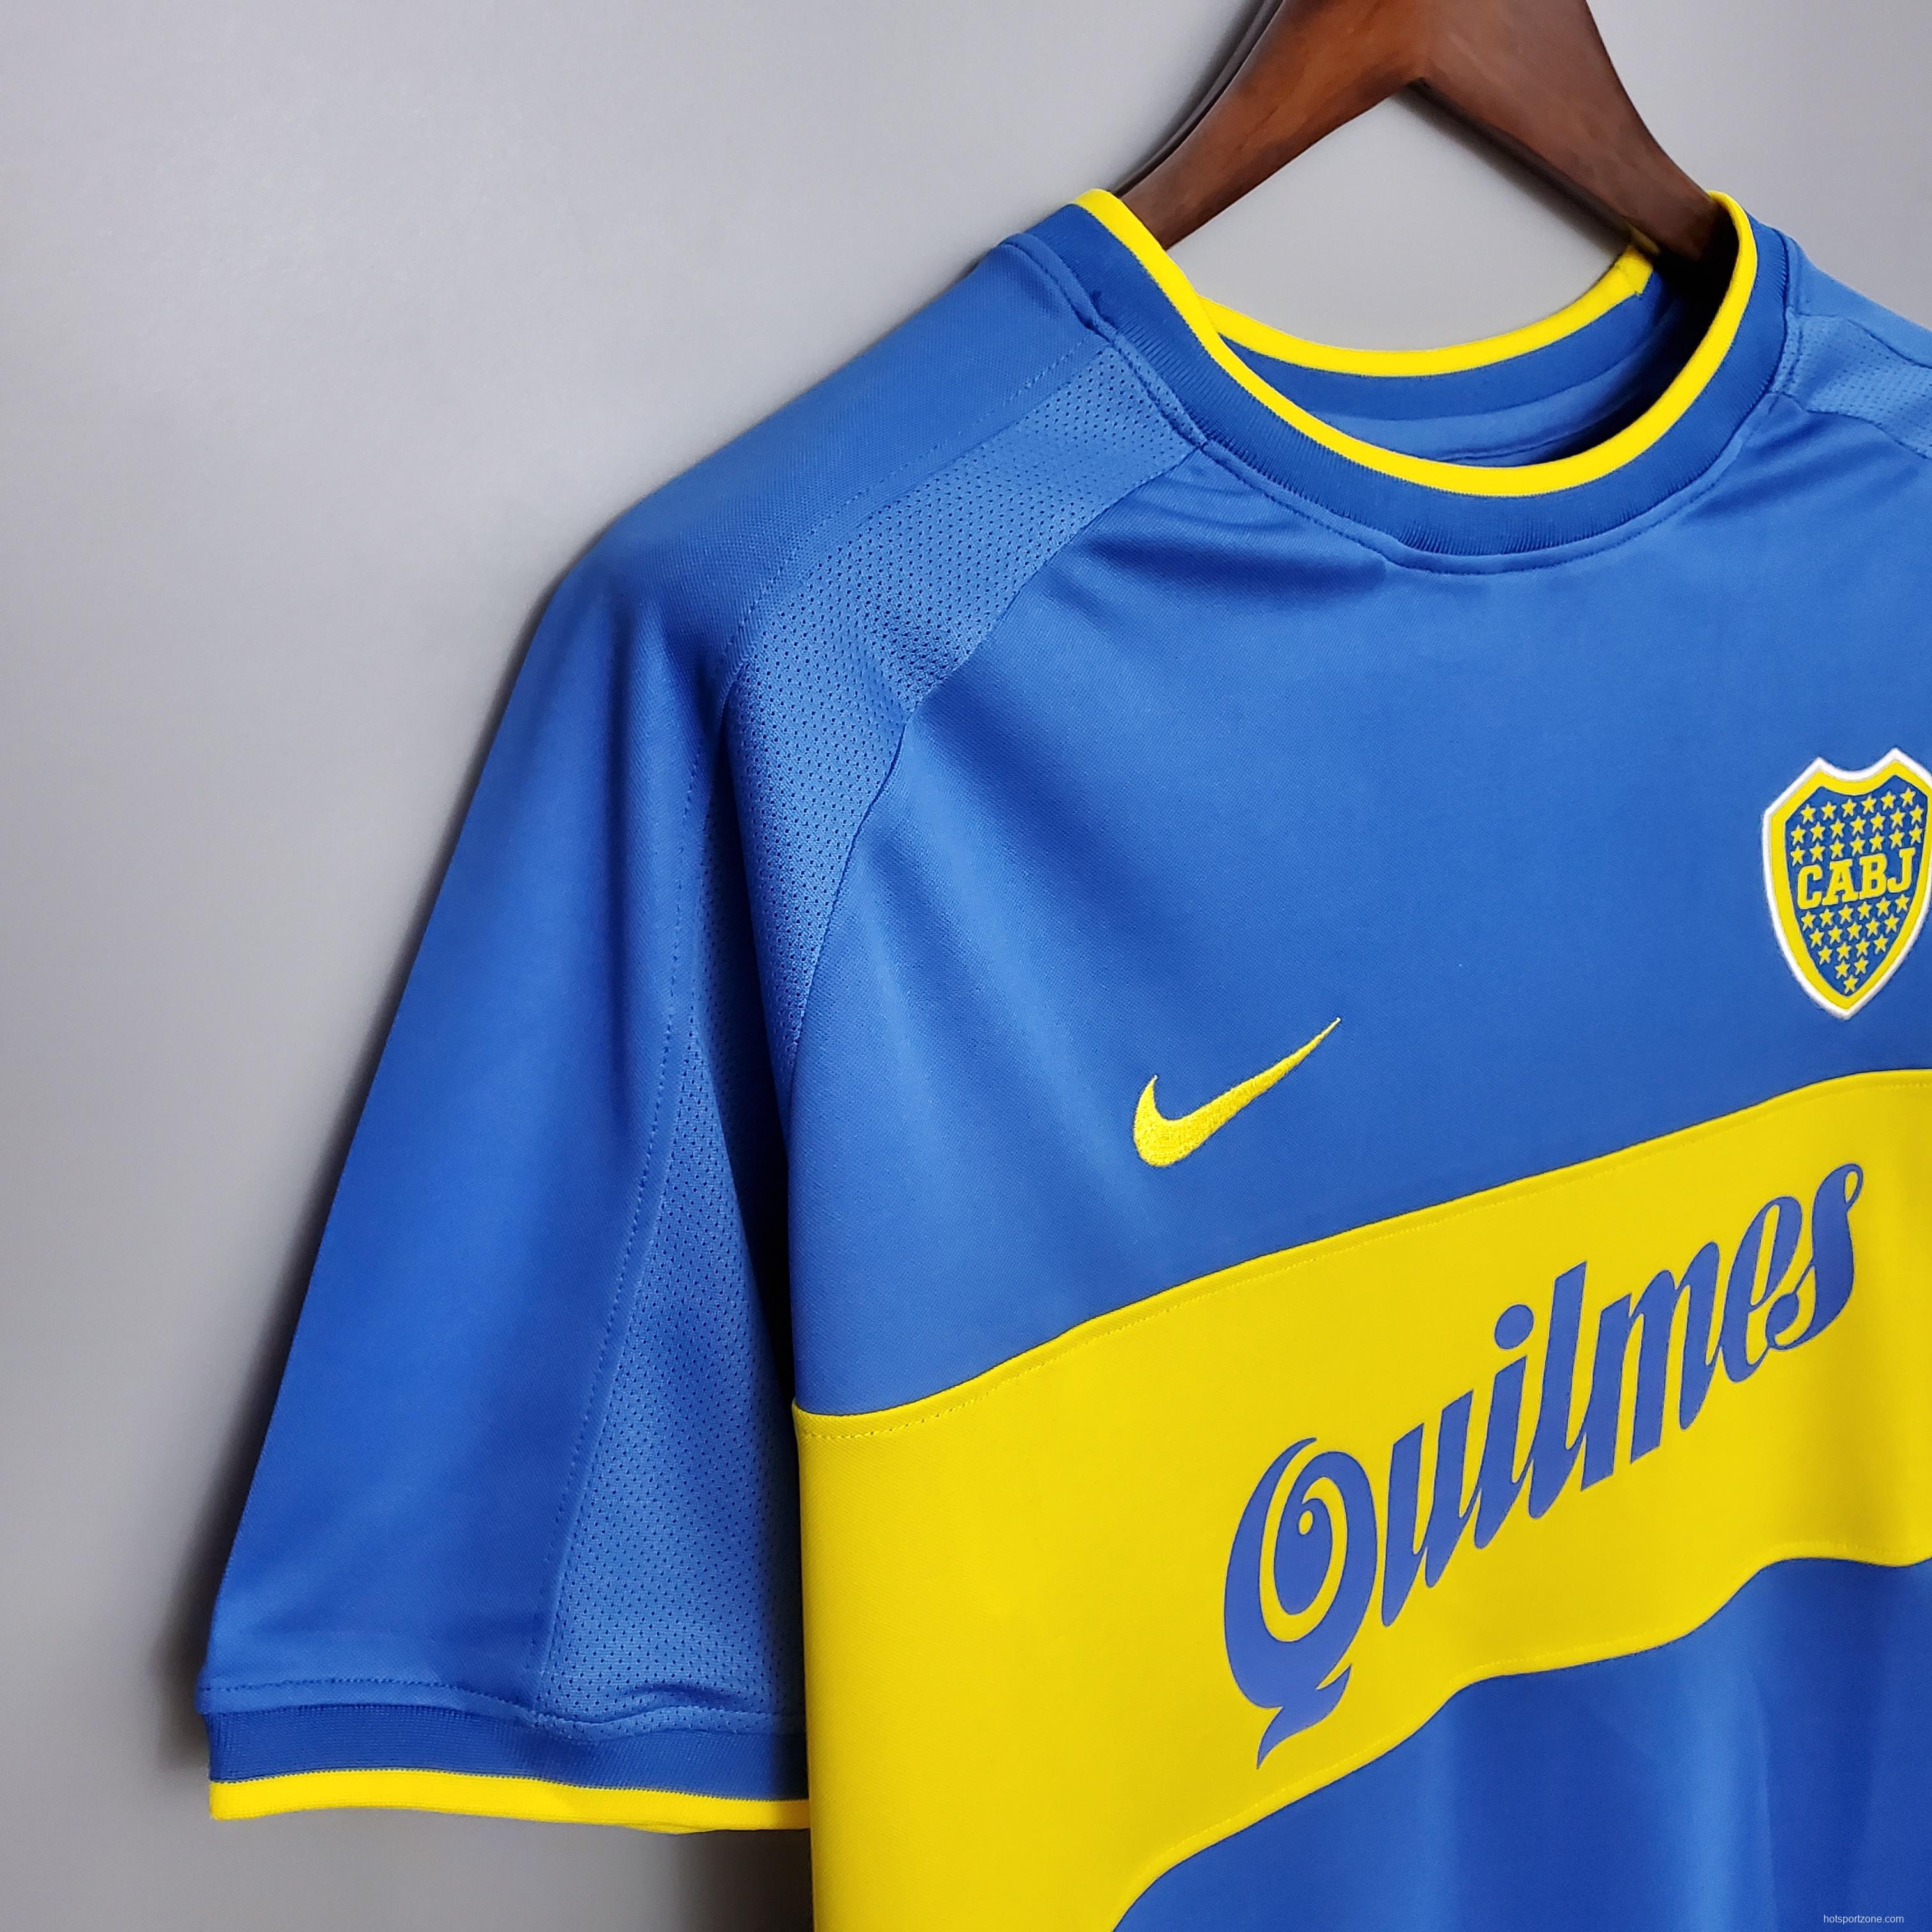 Retro Boca Juniors 99/00 home Soccer Jersey